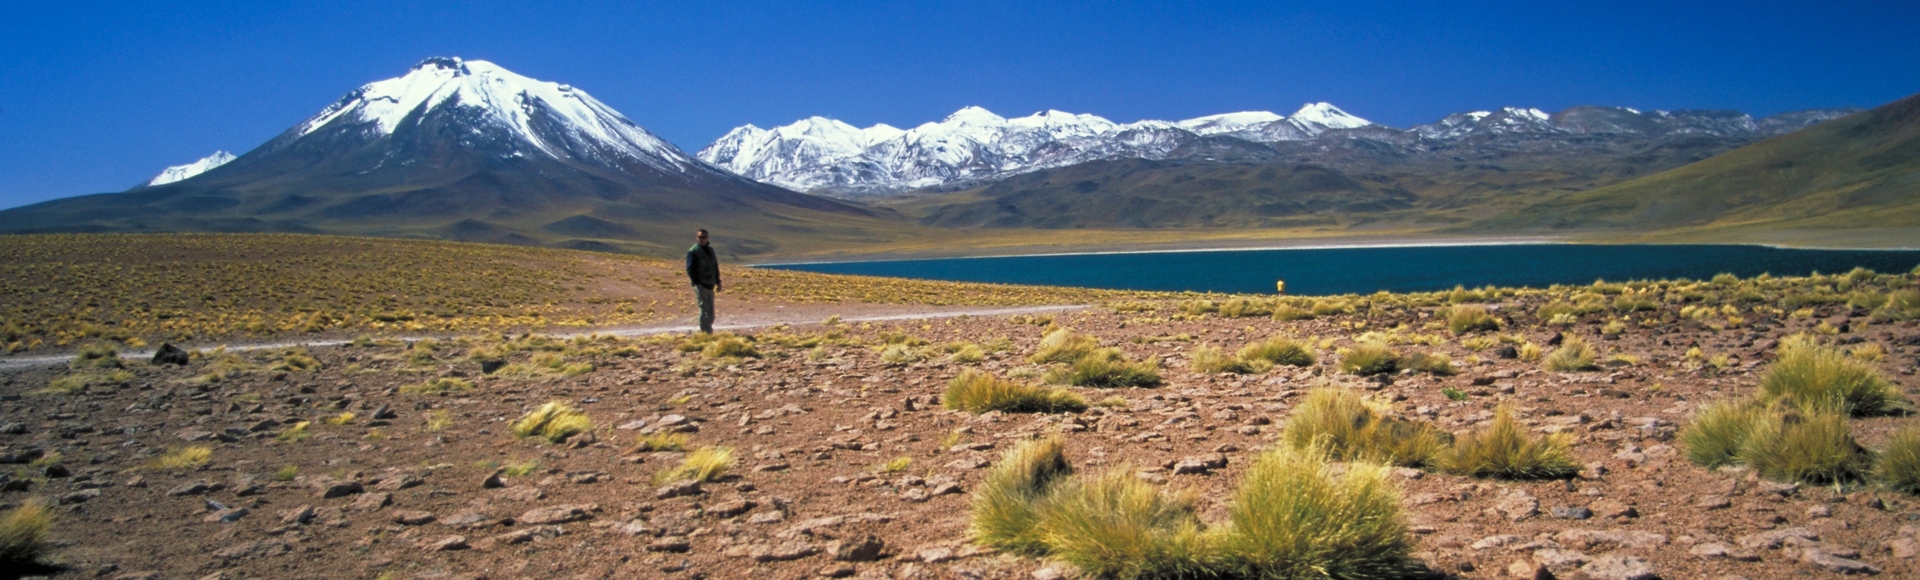 Laguna Miscanti - Désert d'Atacama - Chili